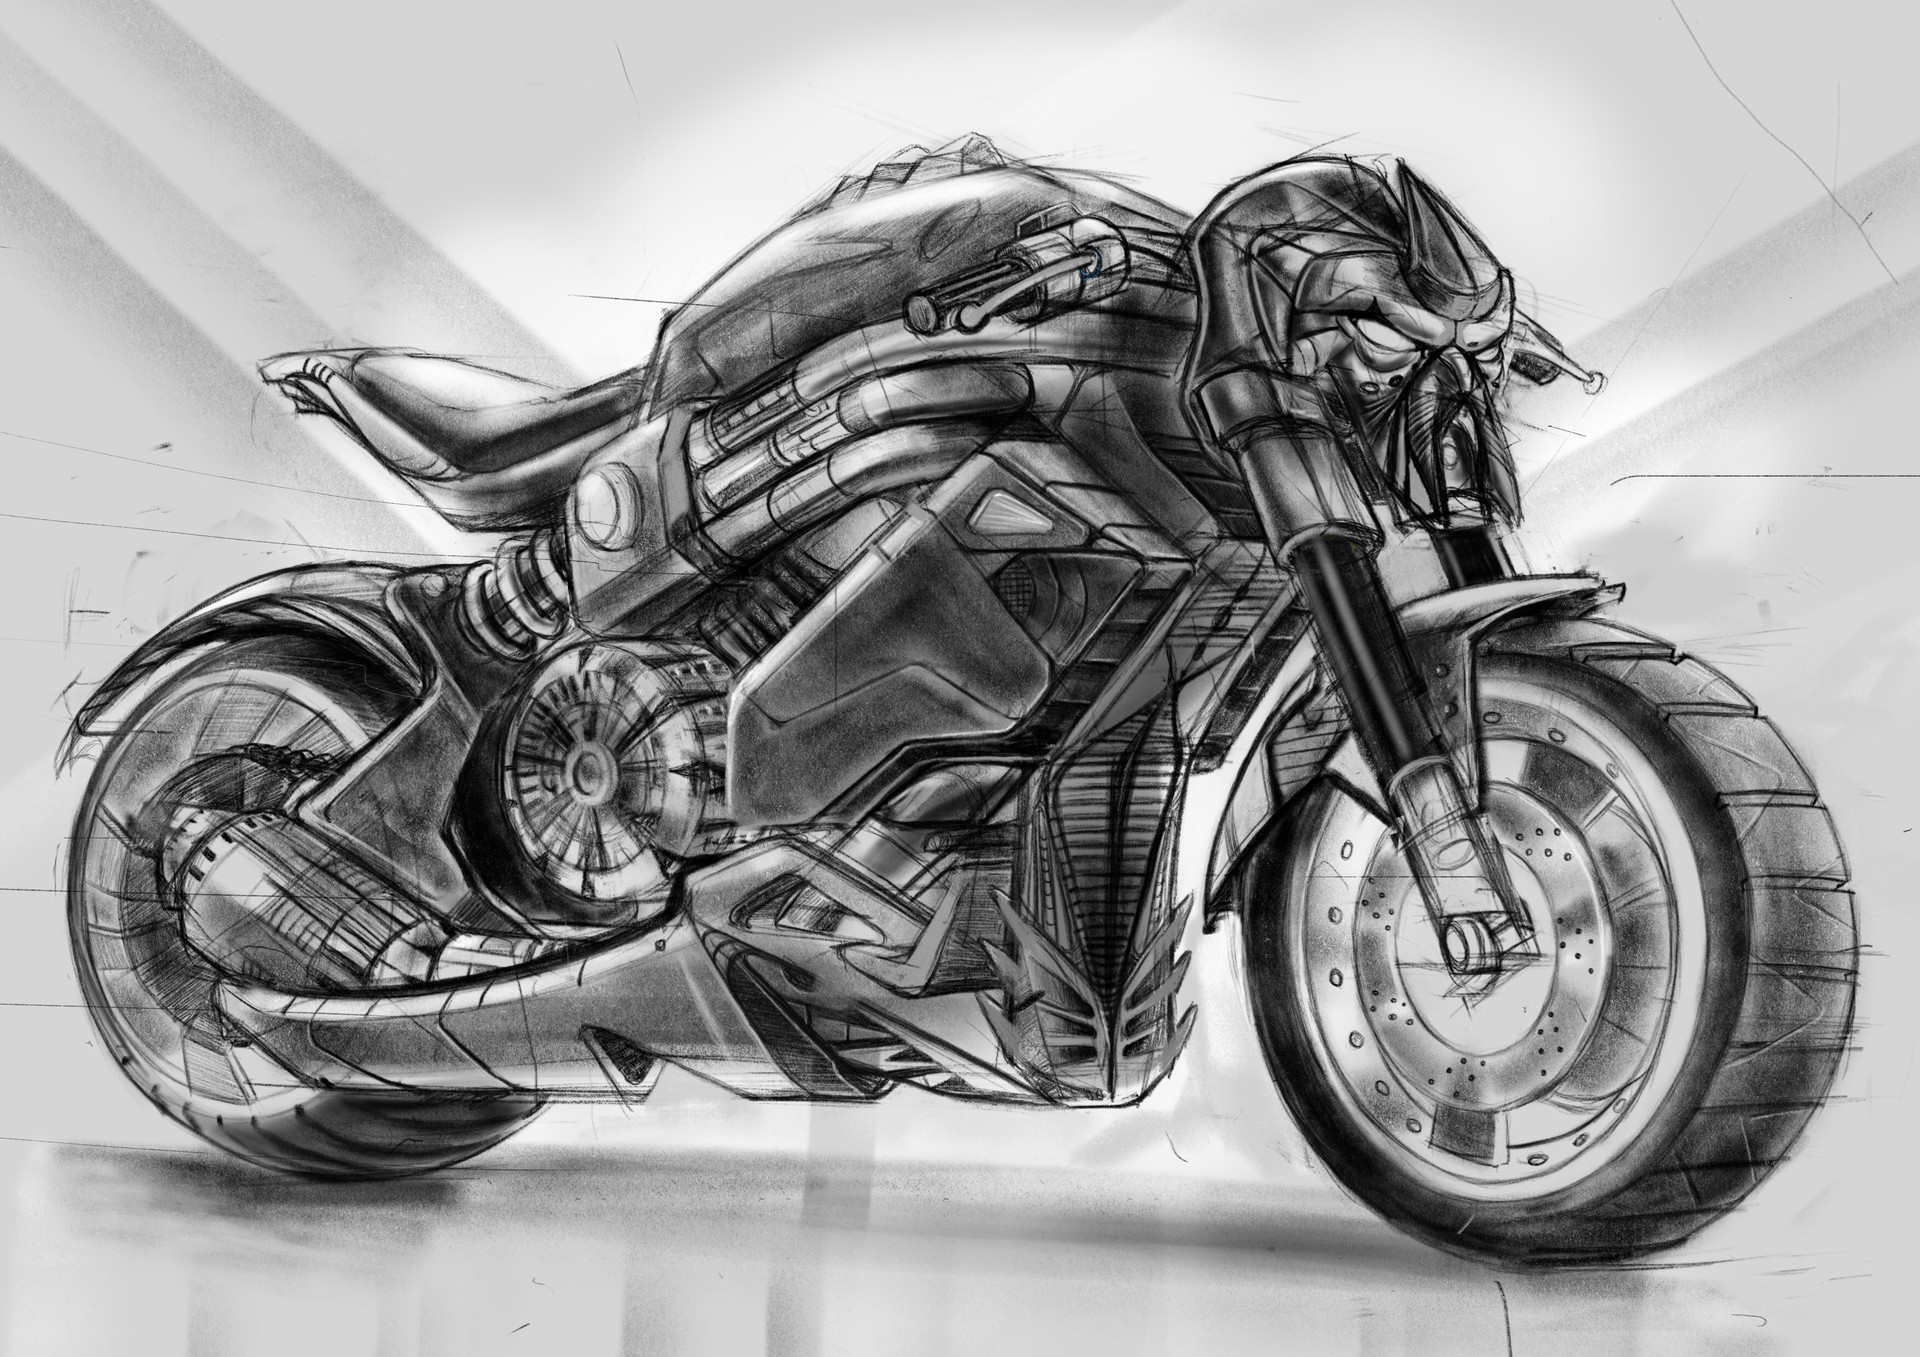 EV0 RR by Mark Wells at Coroflotcom  Bike sketch Bike drawing  Motorcycle drawing